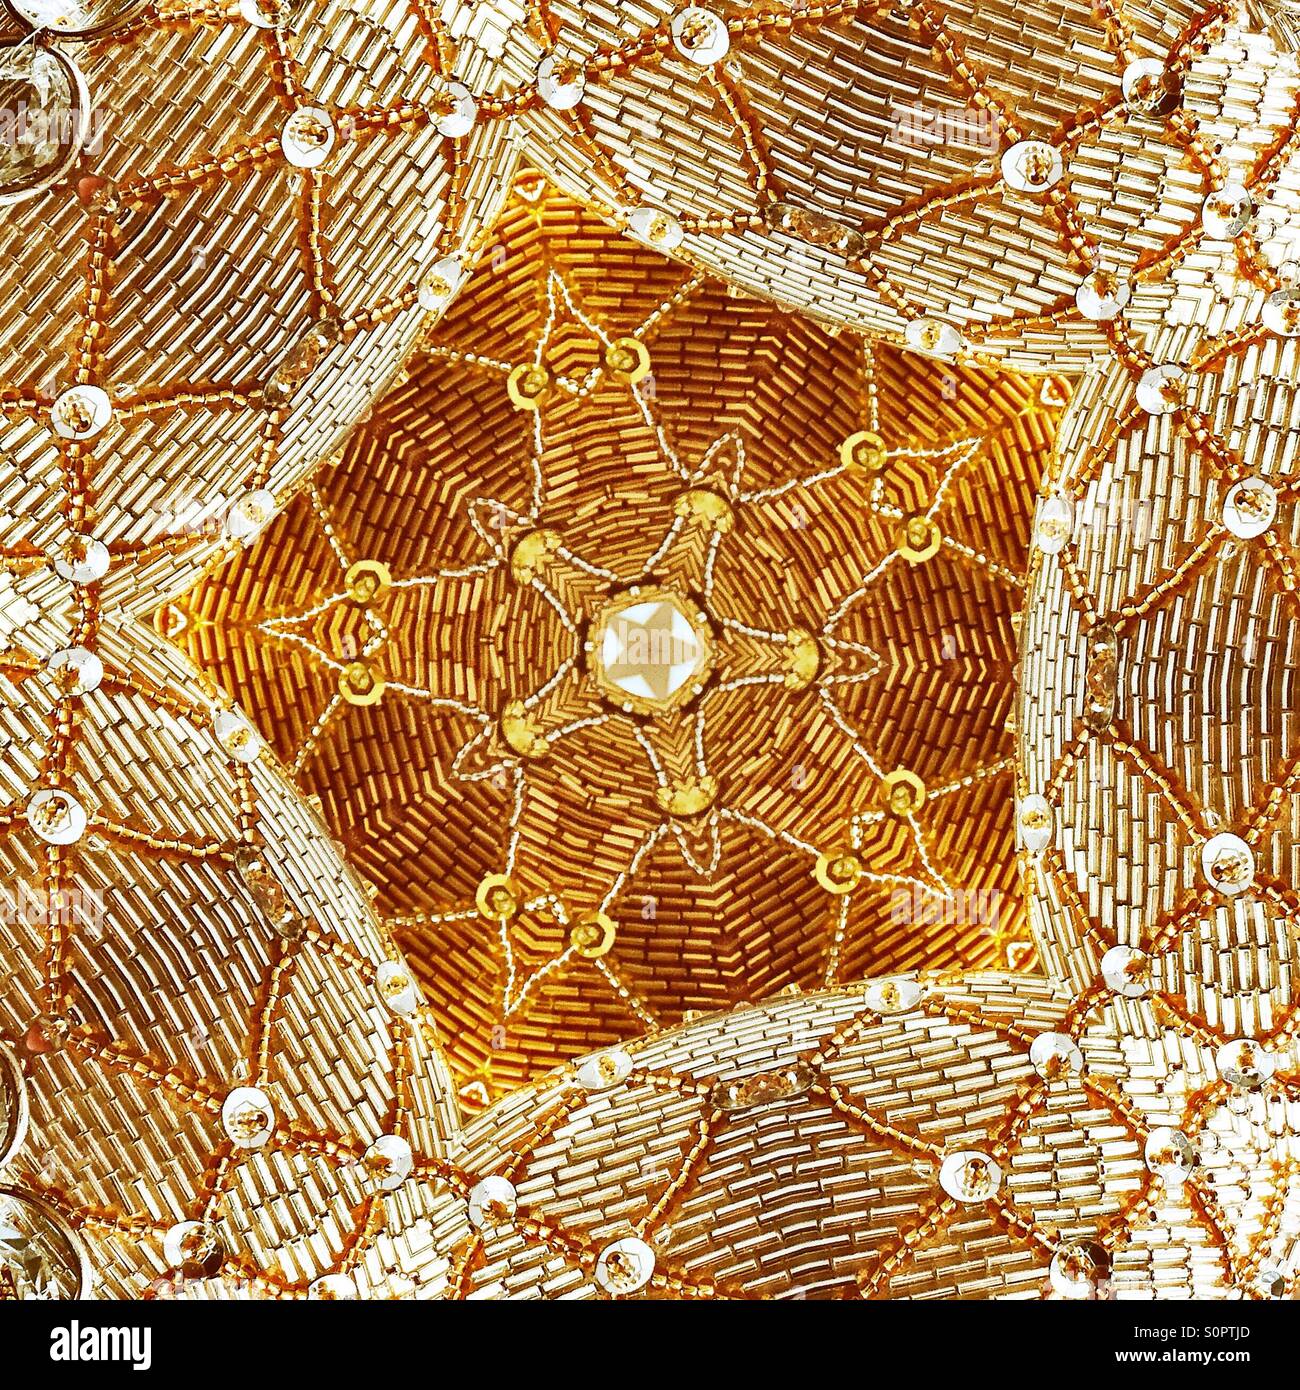 Ein Makro-Ansicht ein Pailletten kaleidoskopartigen Bild des goldenen und weißen sternförmig. Stockfoto